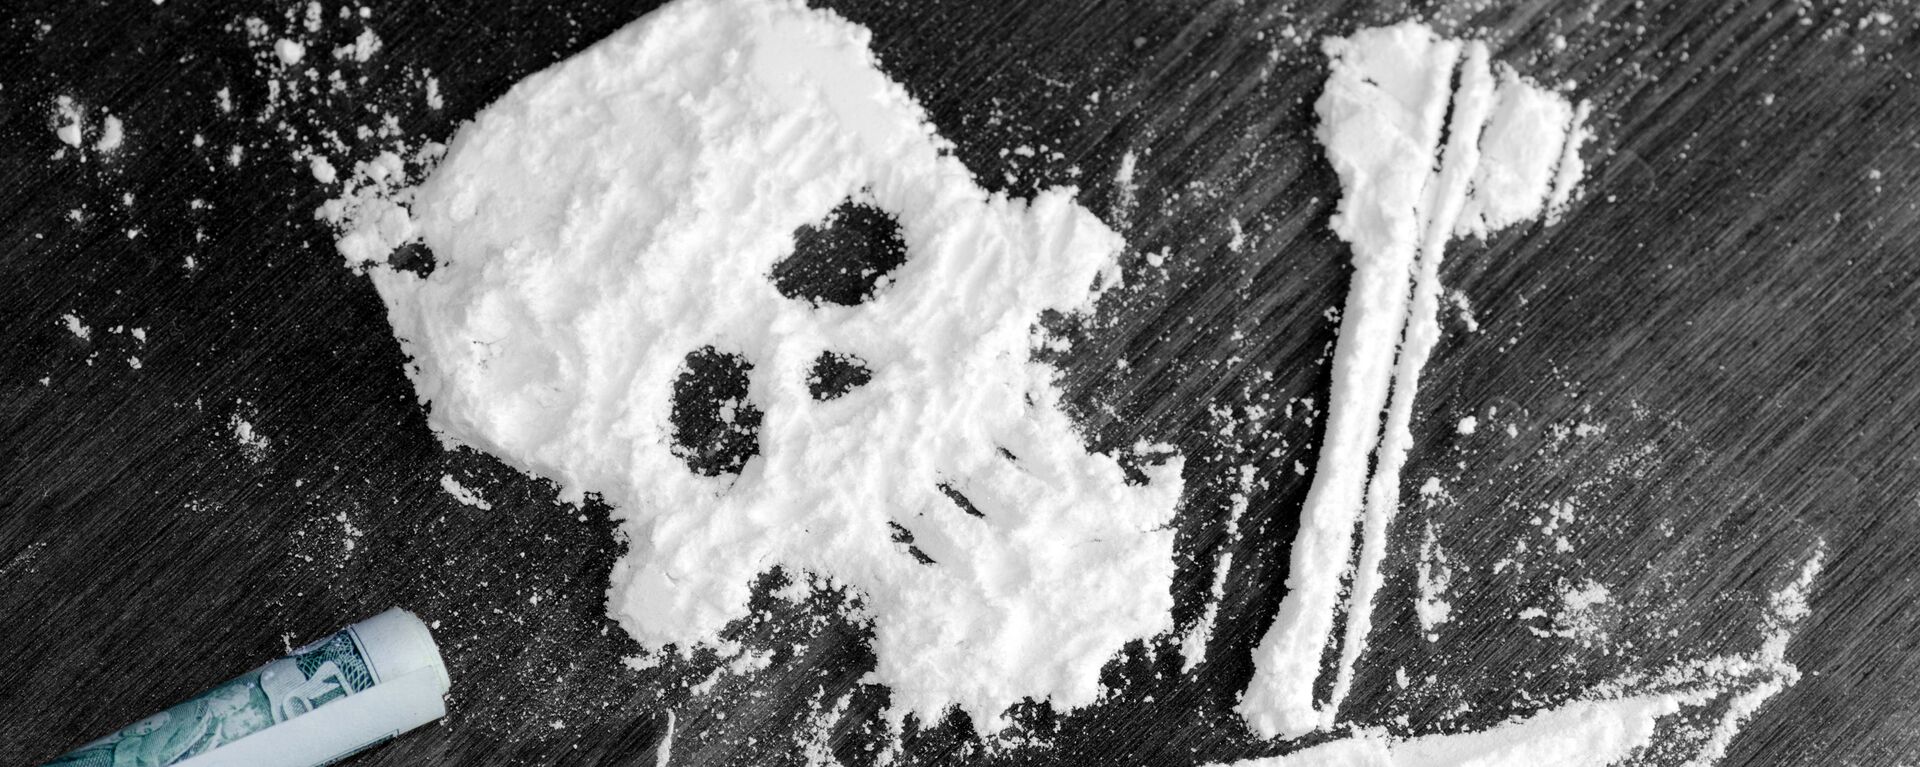 Phương tiện: Hơn 1,5 tấn cocaine dạt vào bãi biển Pháp - Sputnik Việt Nam, 1920, 10.08.2020